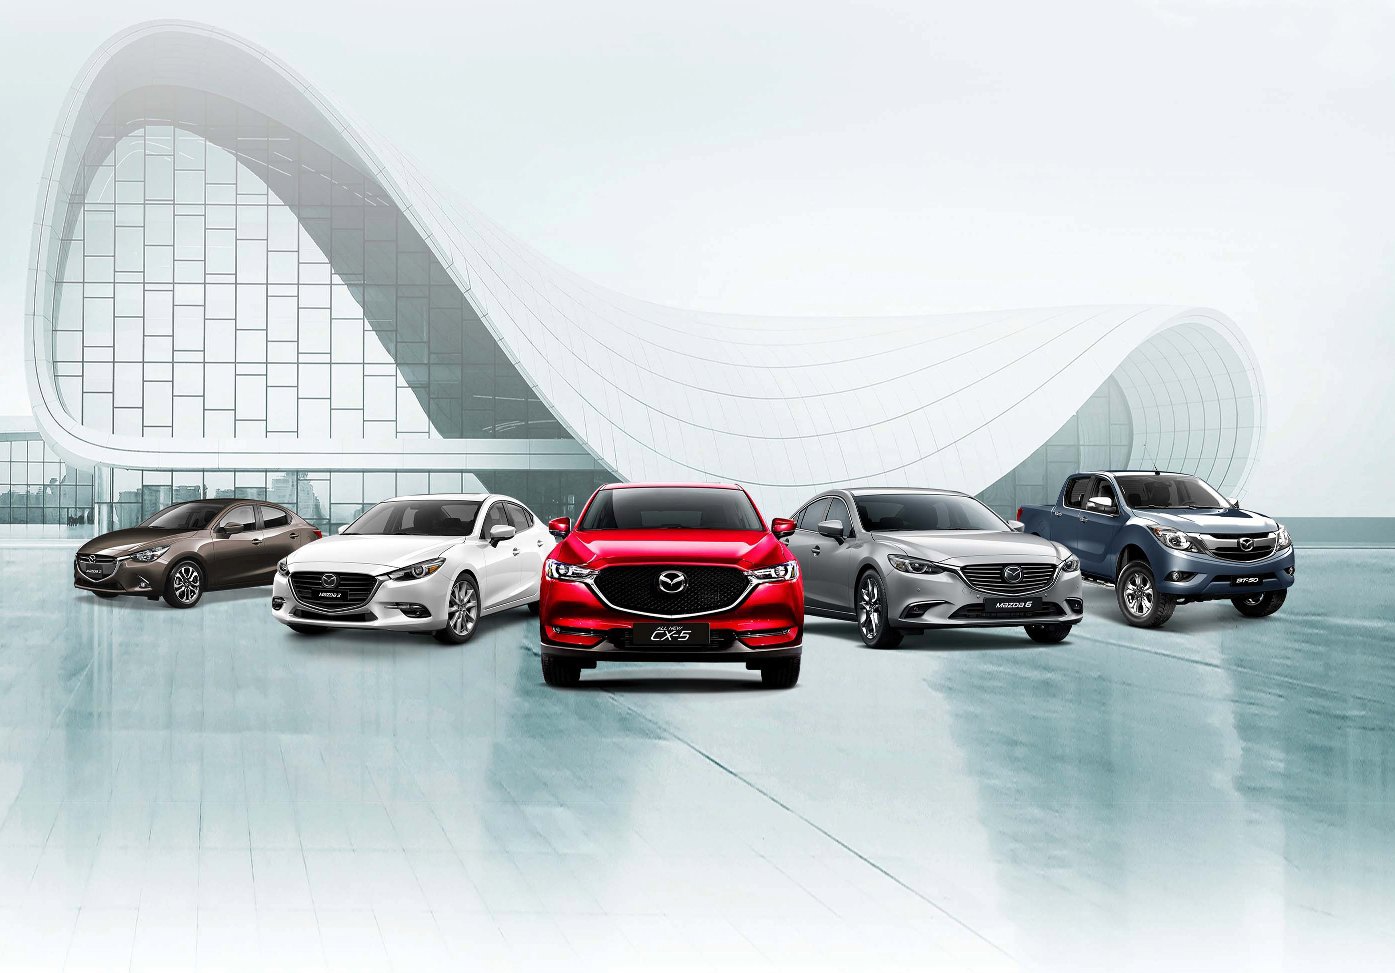 Từ 24/11- 30/11/2018, Công ty cổ phần ô tô Trường Hải (Thaco) thực hiện chương trình ưu đãi đặc biệt dành riêng cho các mẫu xe Mazda với mức cao nhất lên đến 30 triệu đồng.